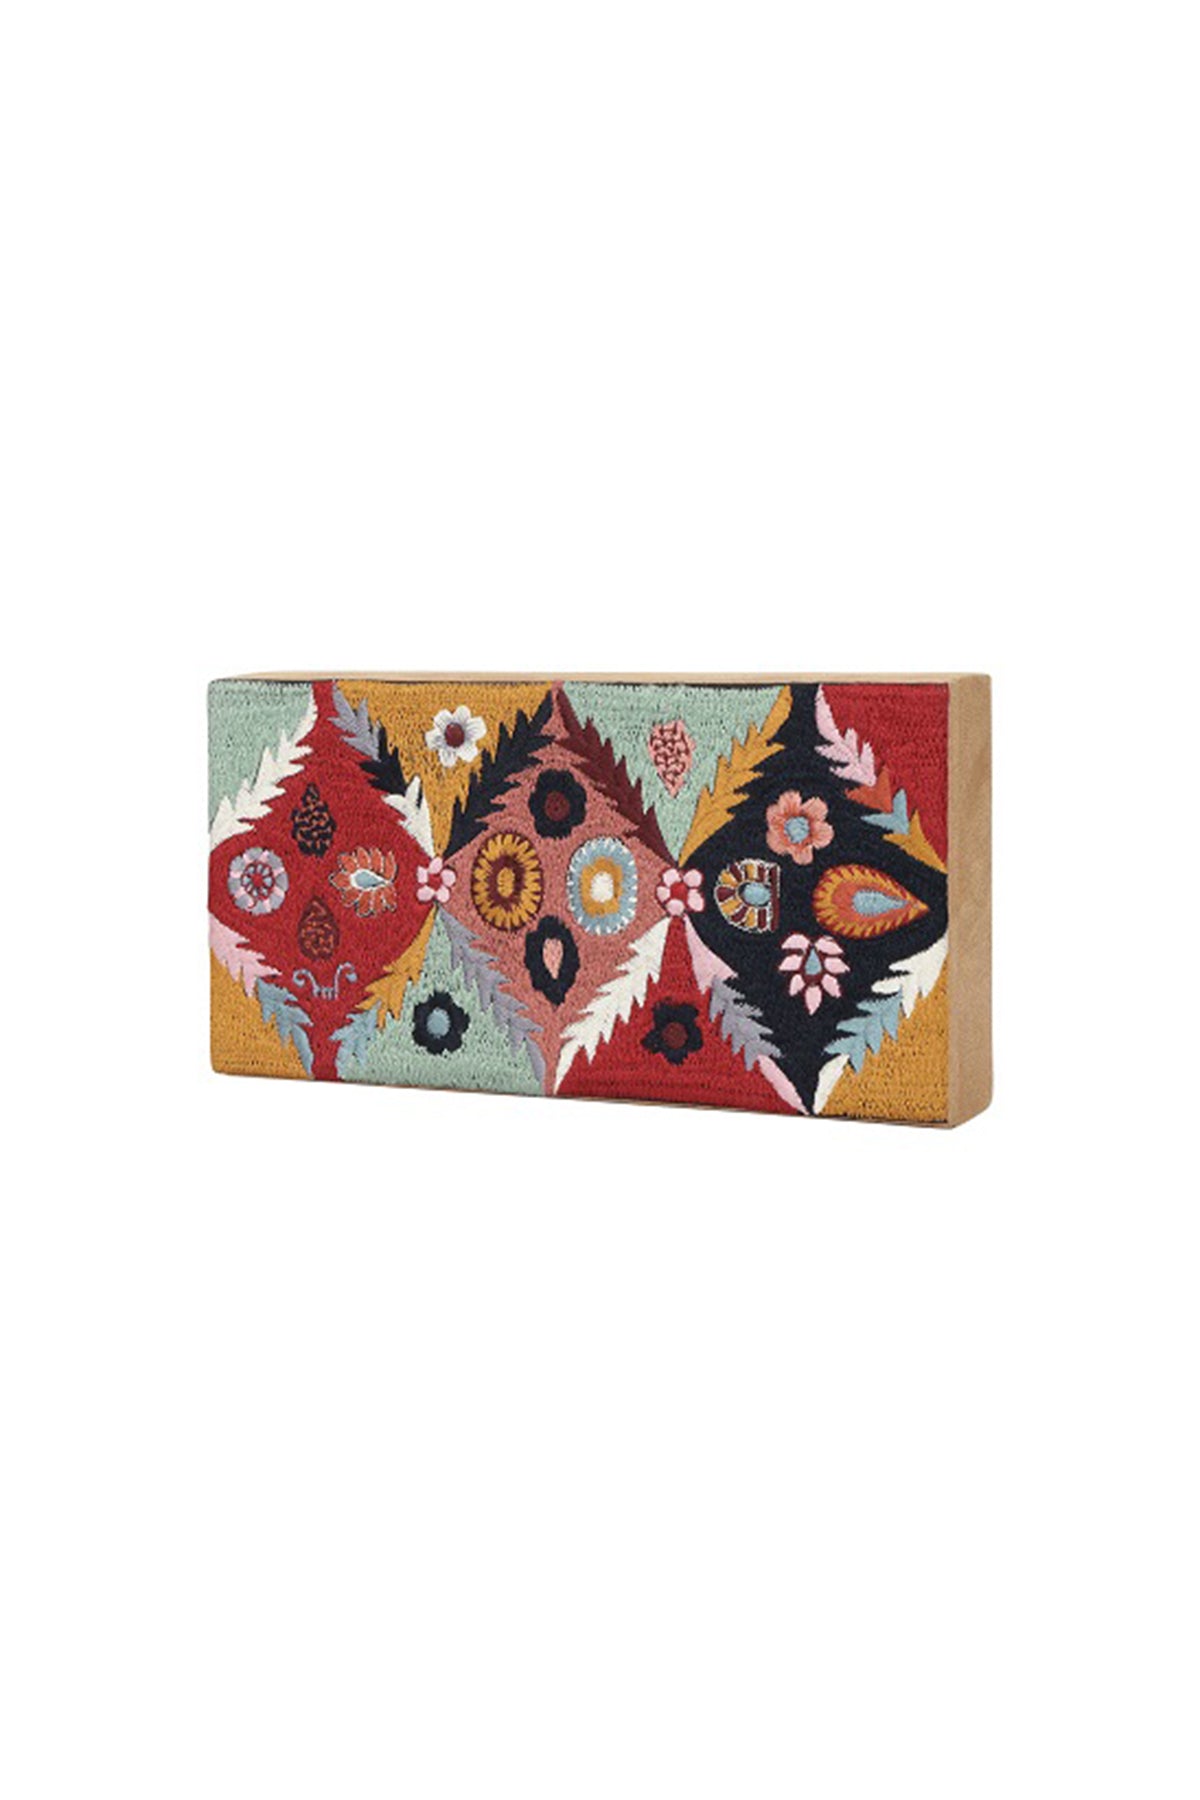 Multicolored embroidered money box